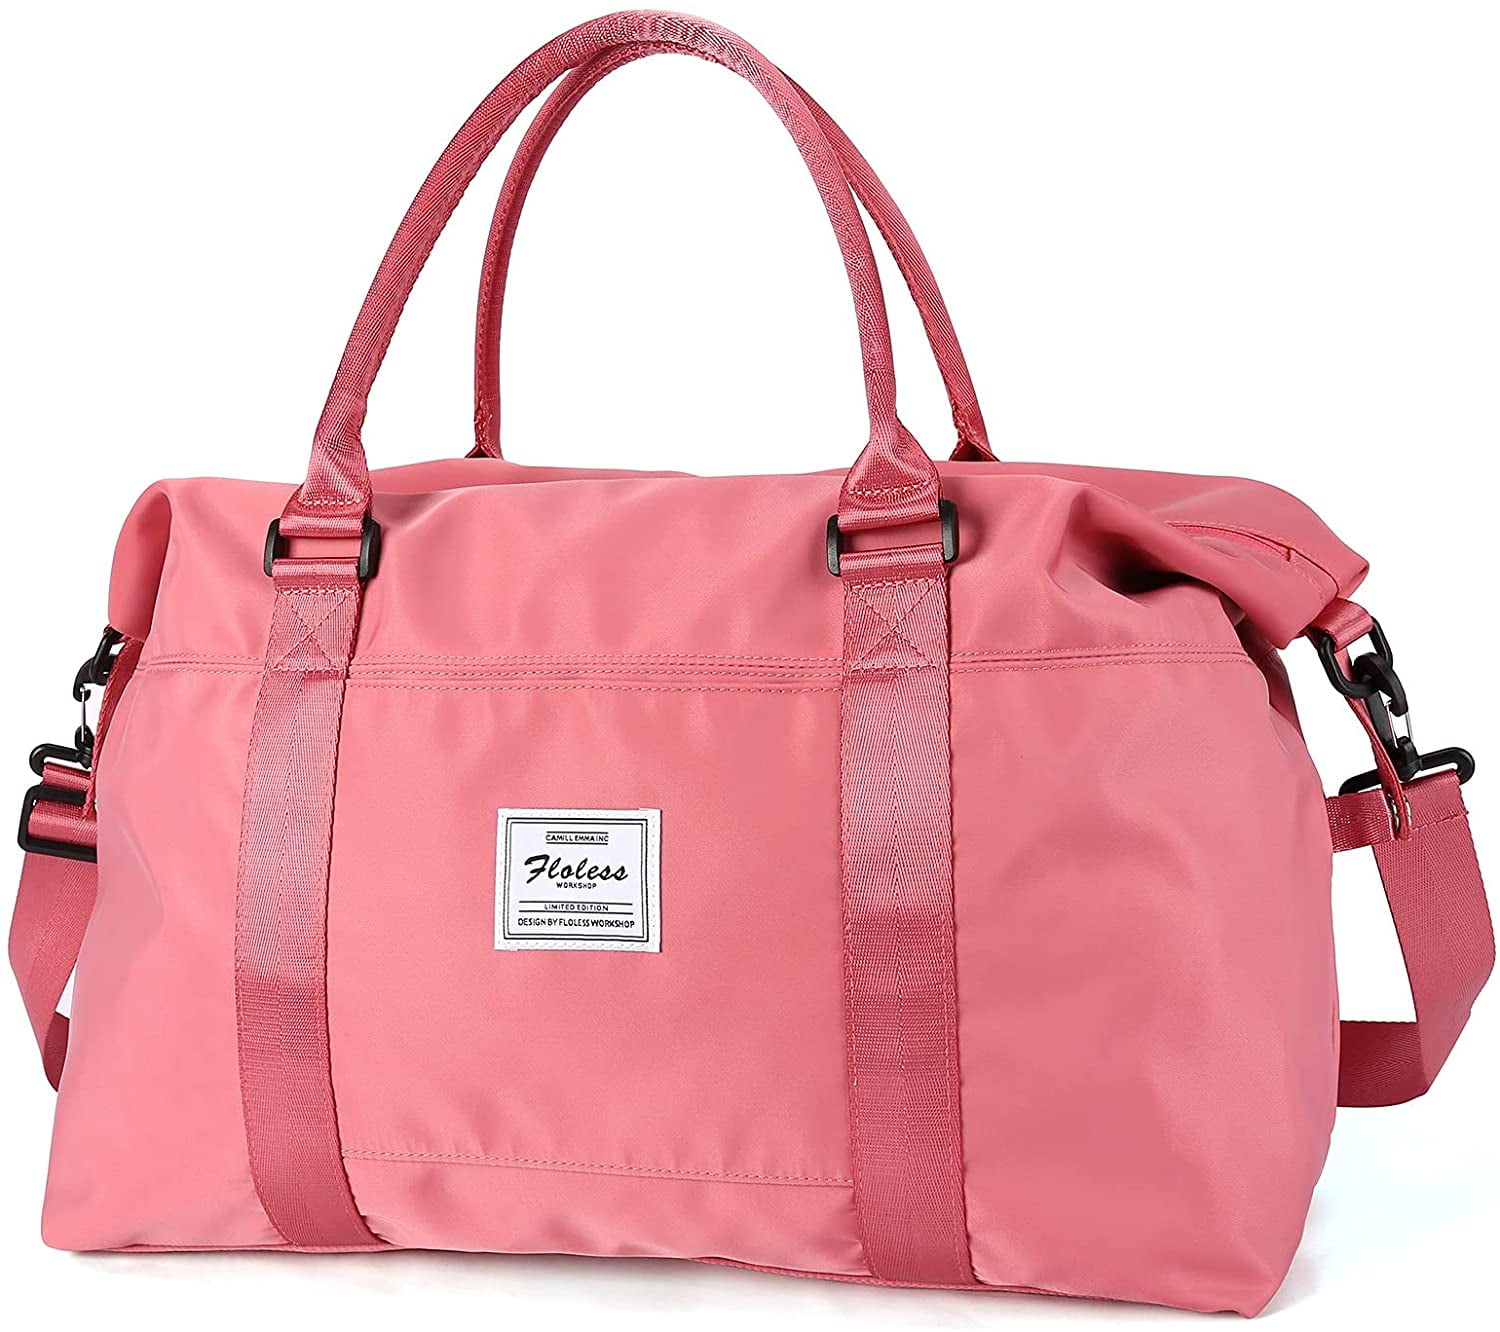 Travel Duffel Bag,Sports Tote Gym Bag,Shoulder Weekender Overnight Bag for Women 